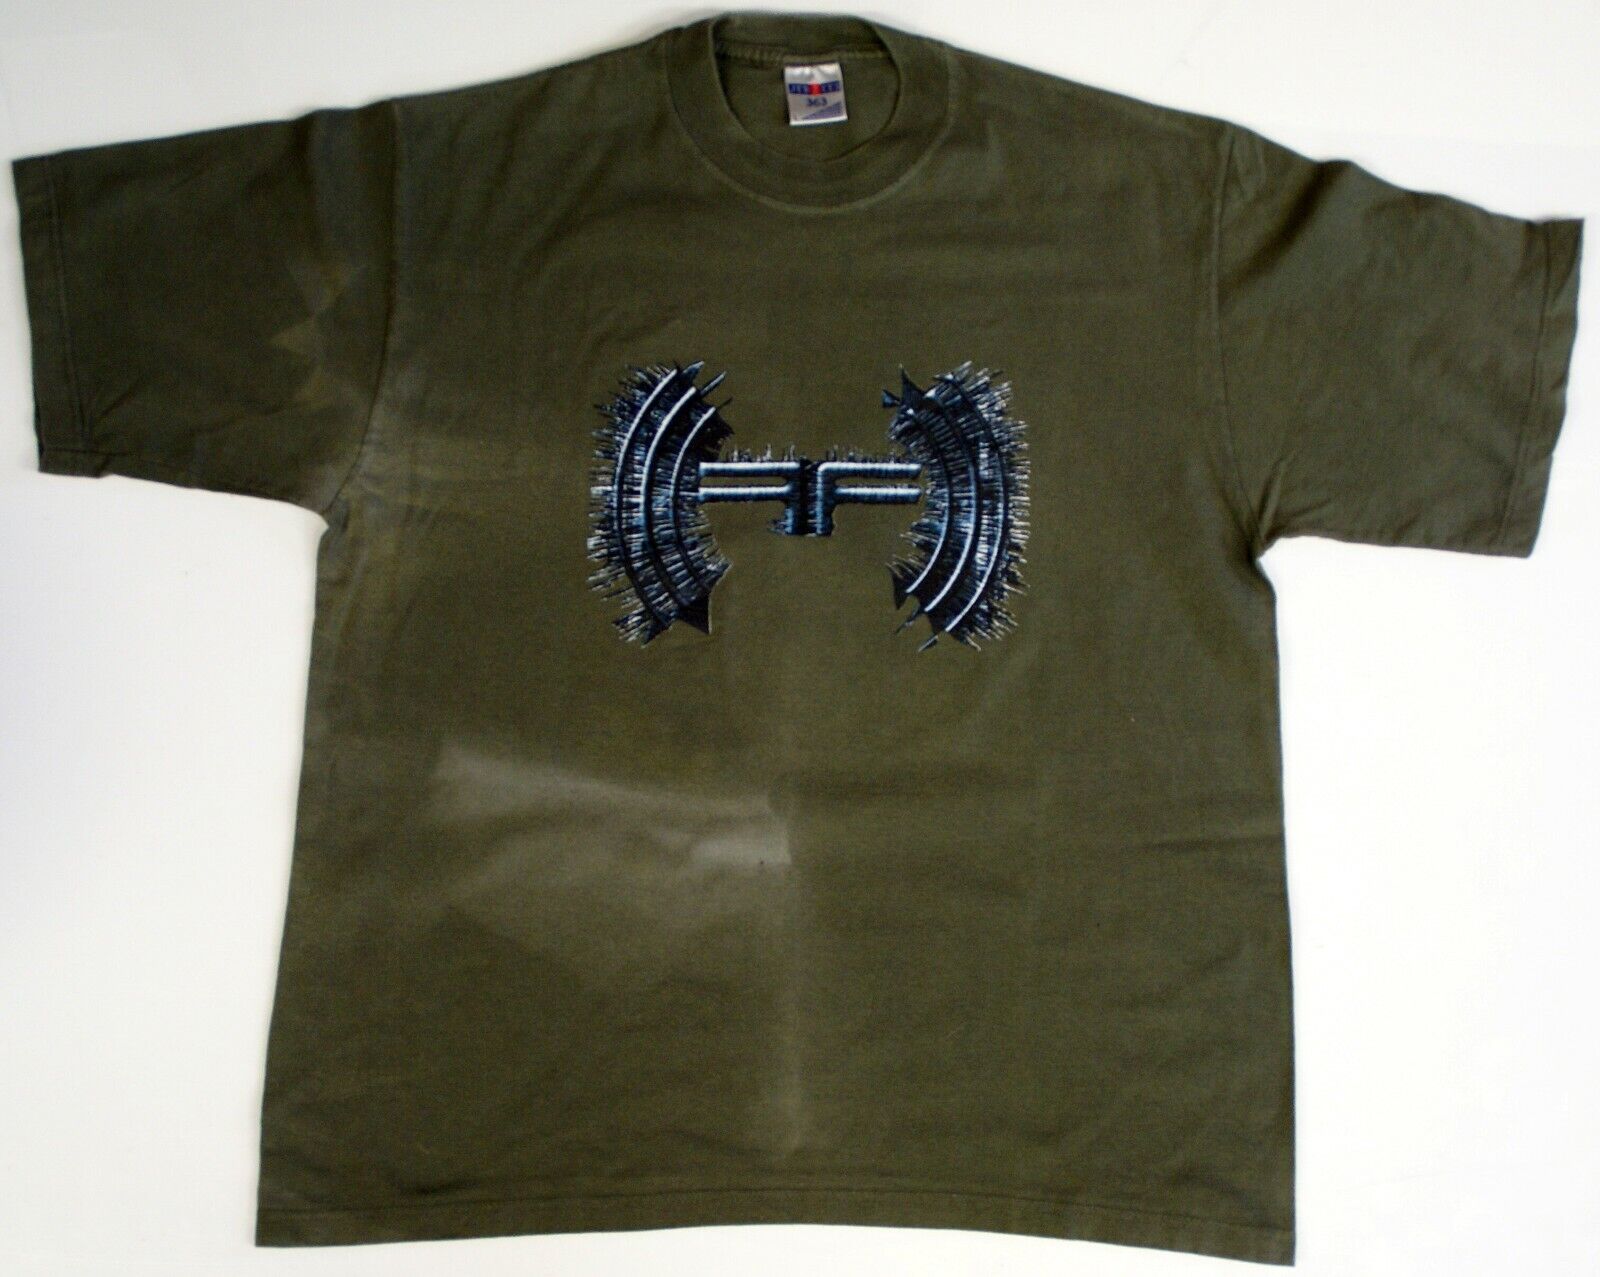 Fear Factory Shirt Original Official Vintage Digimortal Tour 2001